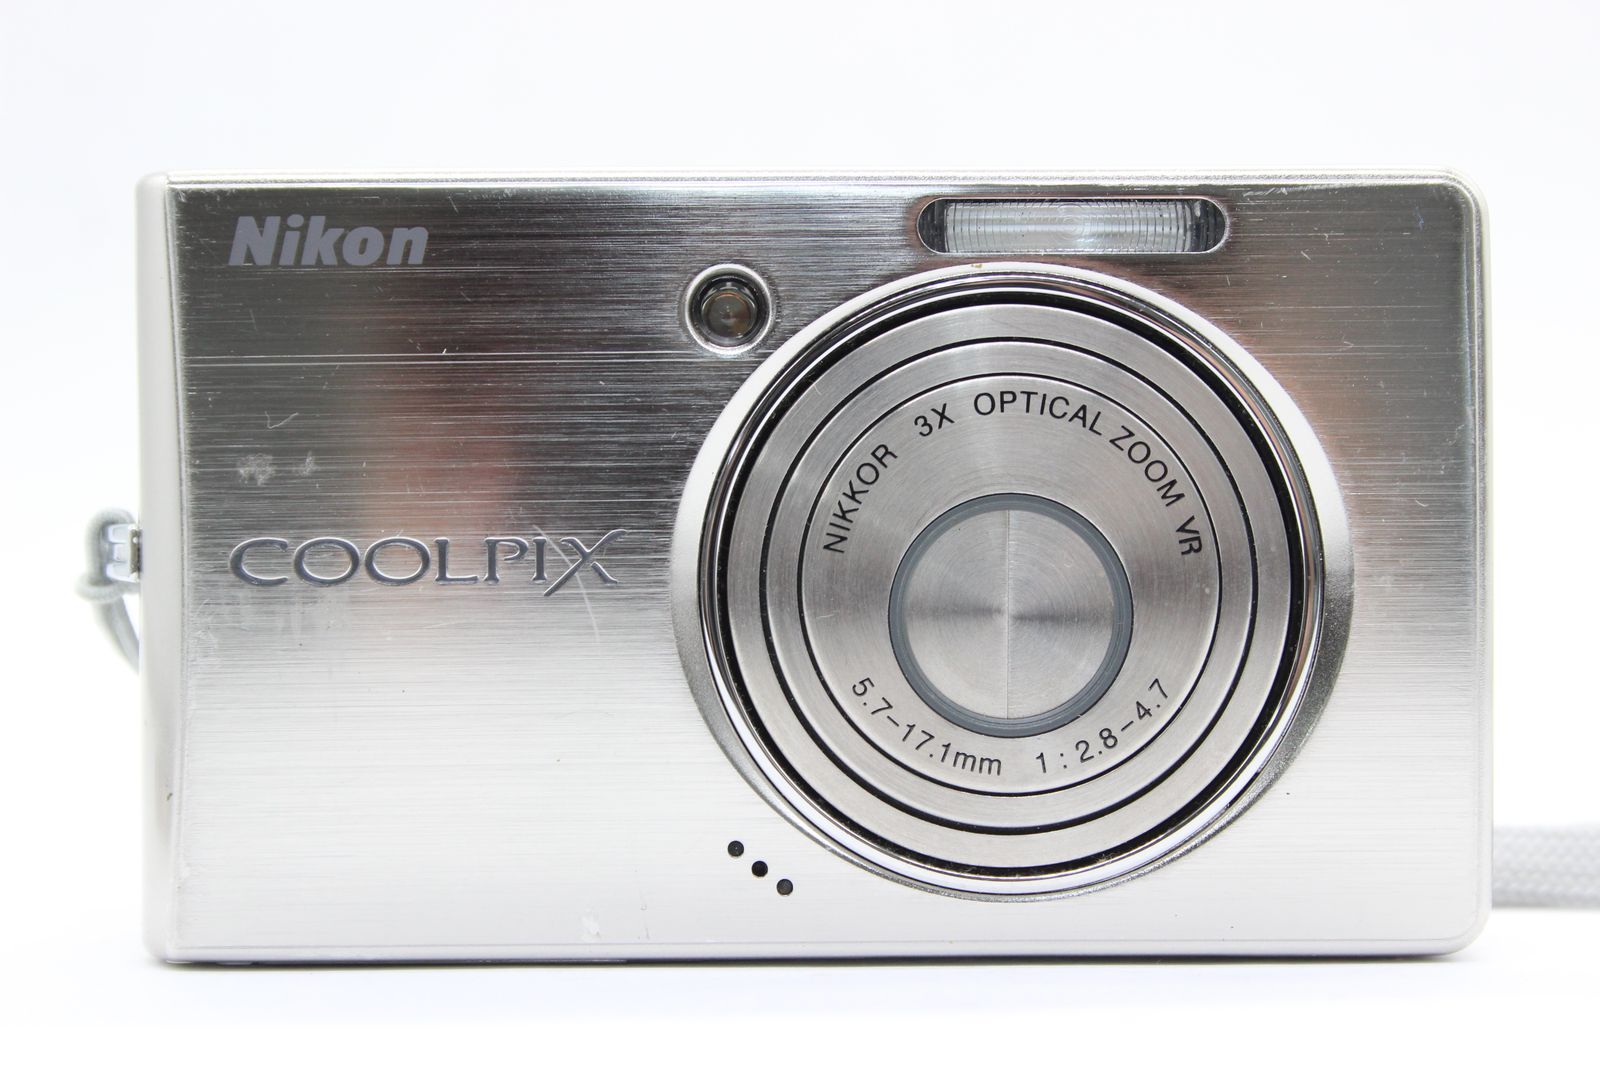 【返品保証】 ニコン Nikon Coolpix S510 3x バッテリー付き コンパクトデジタルカメラ s5797